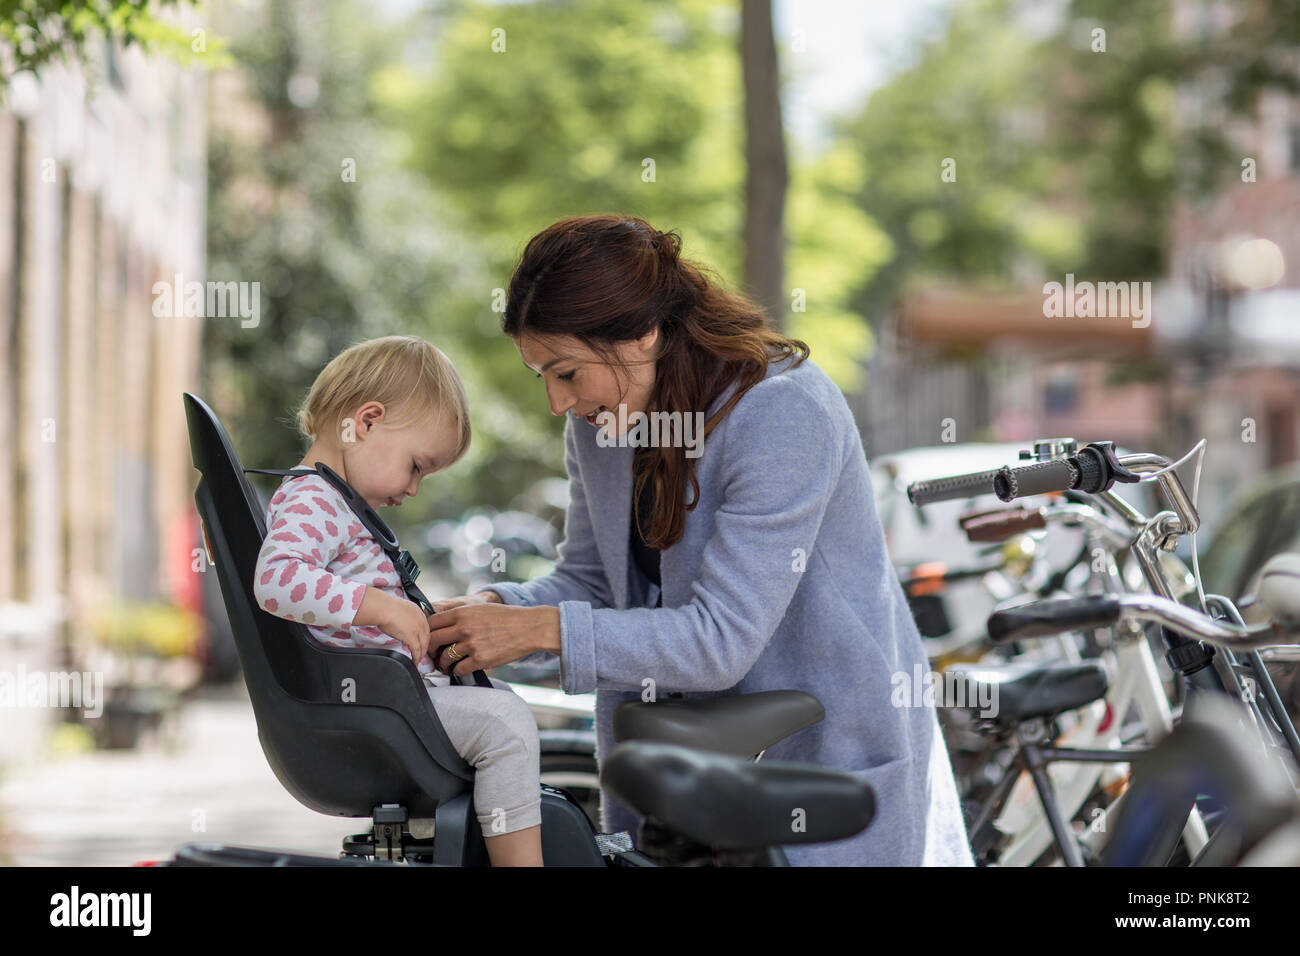 Mère de l'enfant mettant en selle de vélo Banque D'Images